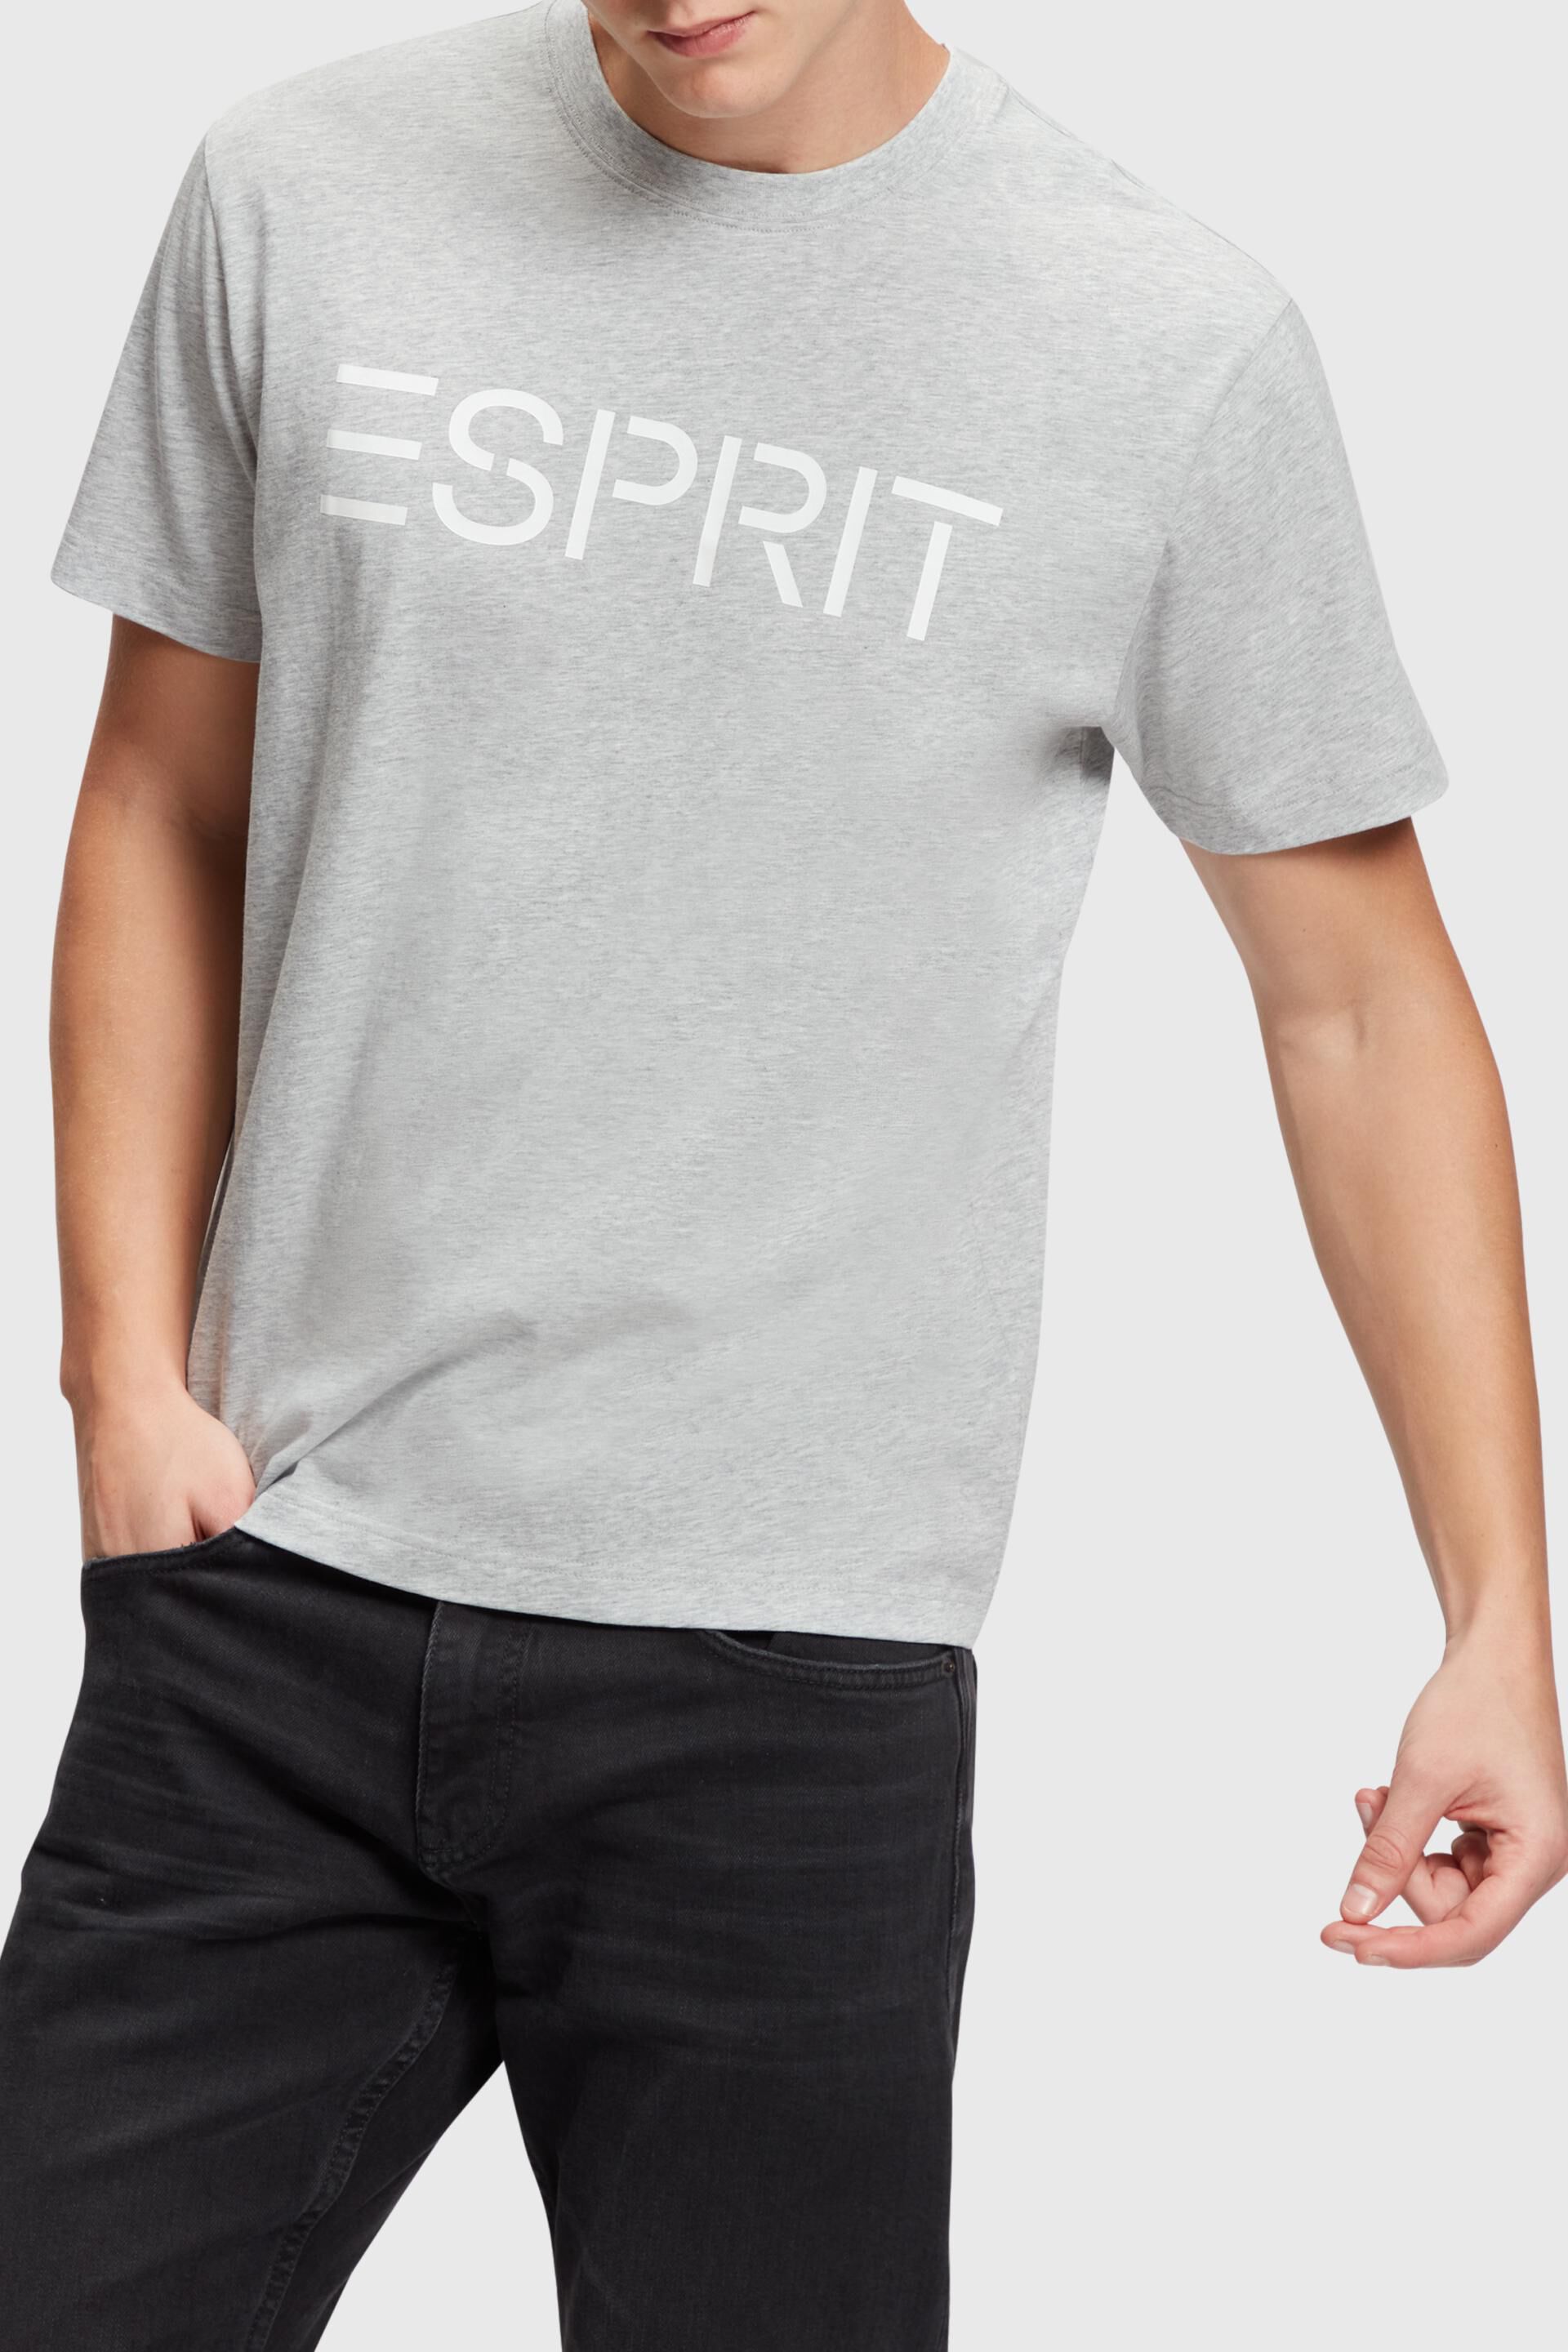 Esprit Logo t-shirt